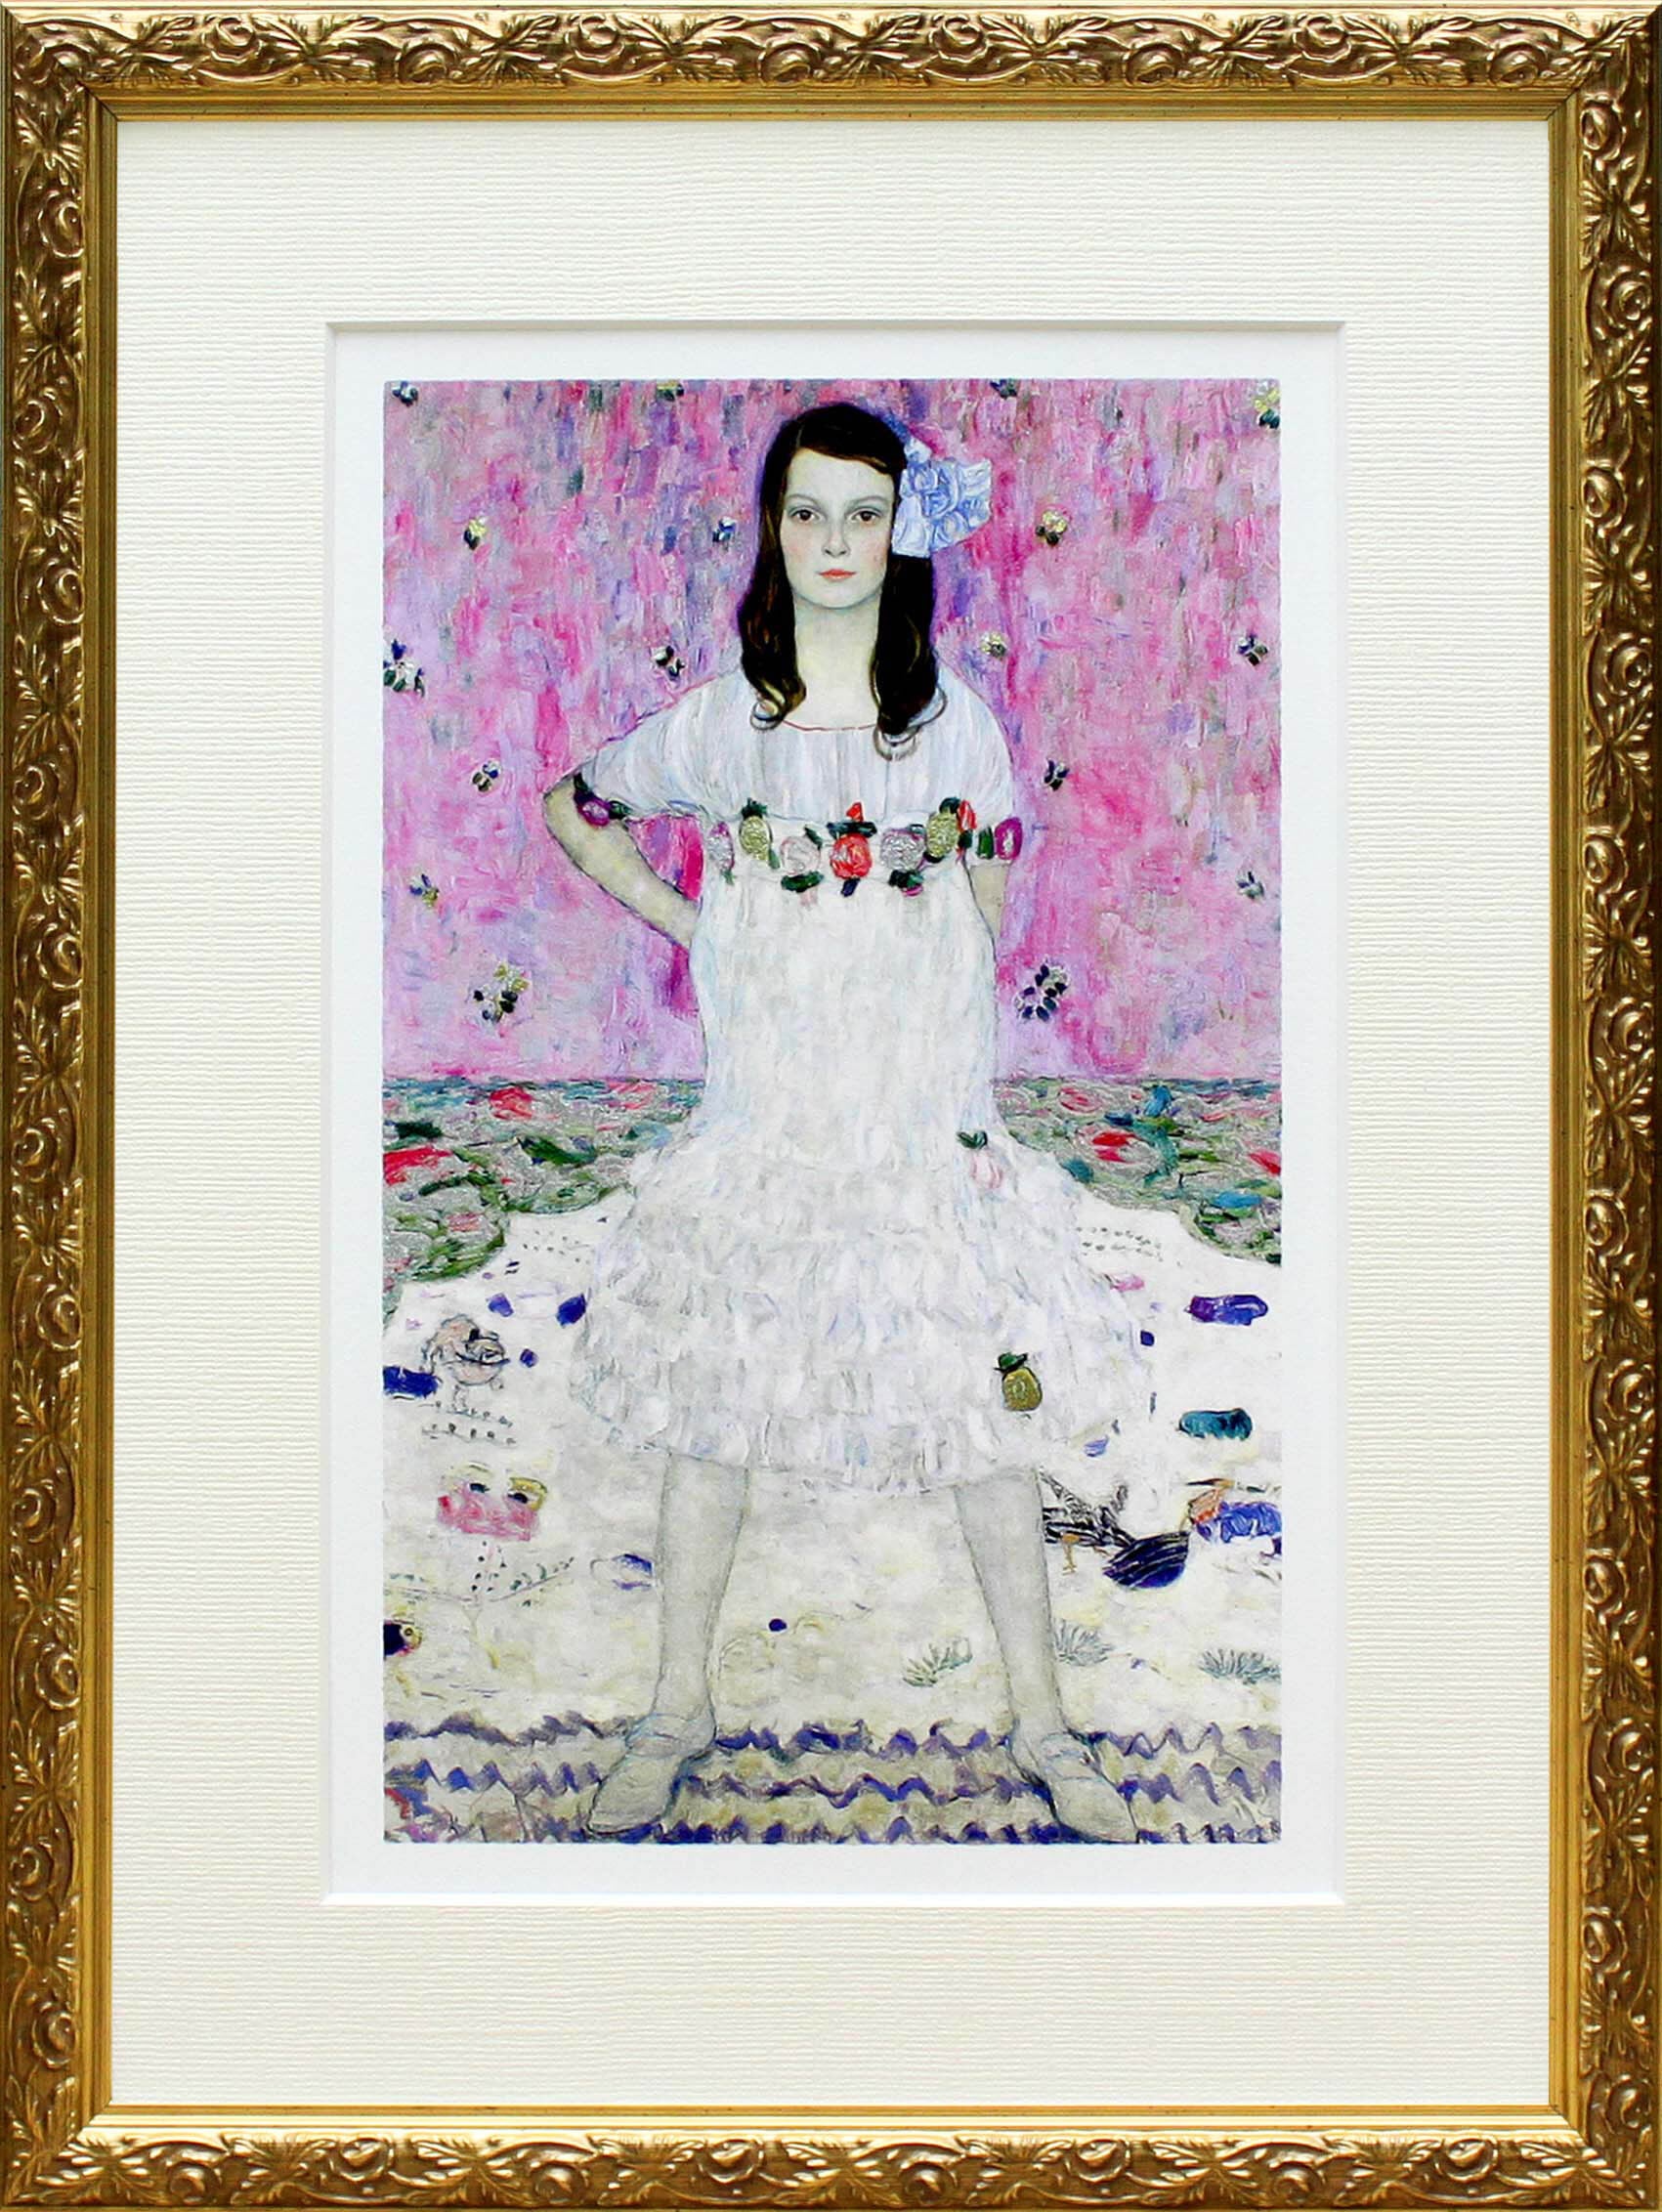 グスタフ・クリムト作品「メーダ・プリマヴェージの肖像」展示用フック